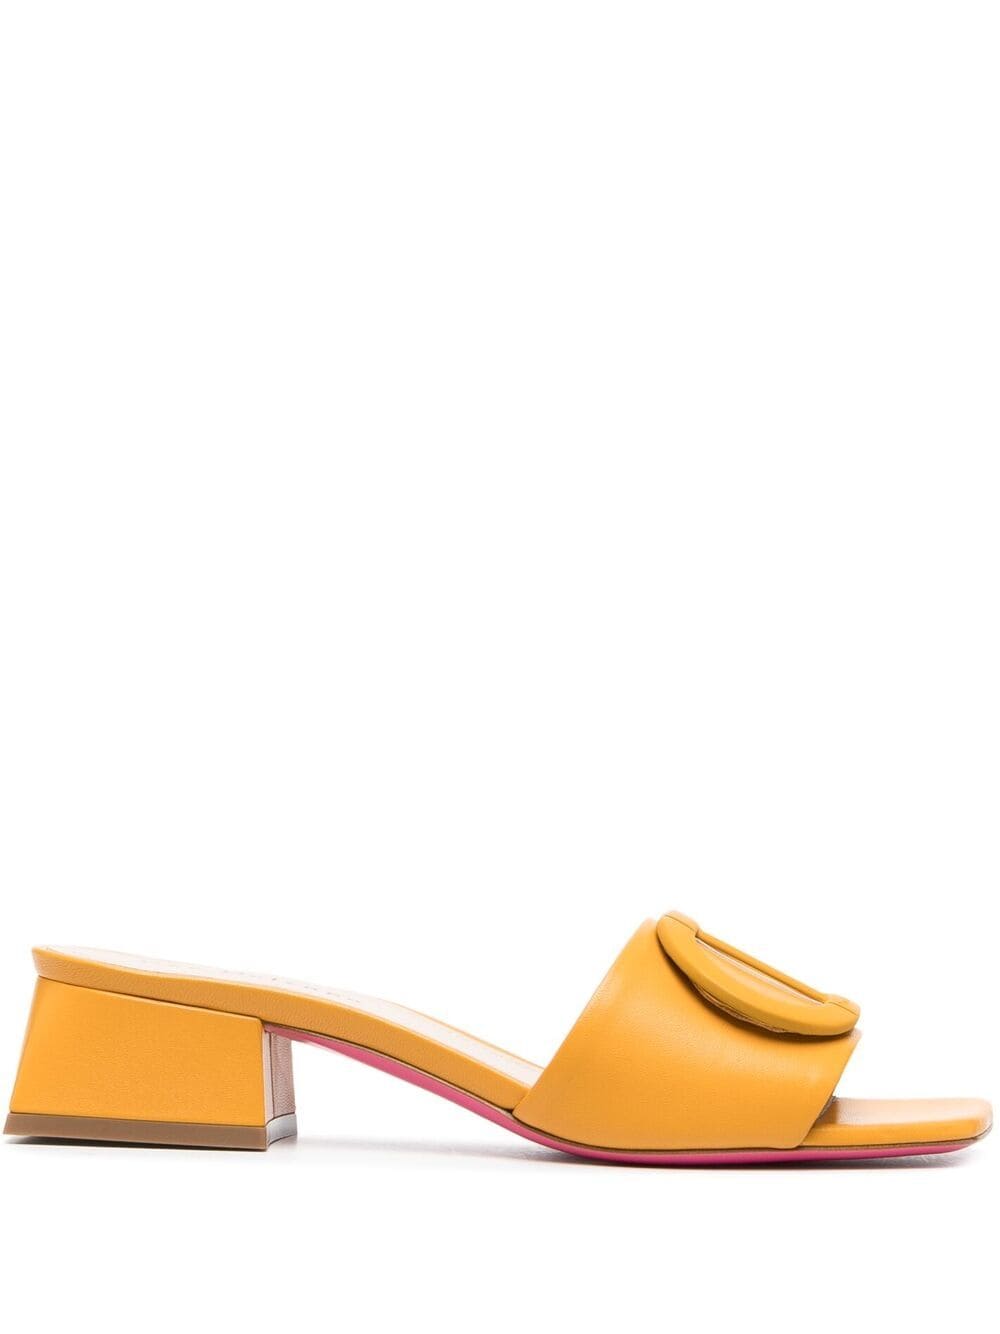 Dee Ocleppo Dee Dizzy Sandals In Yellow